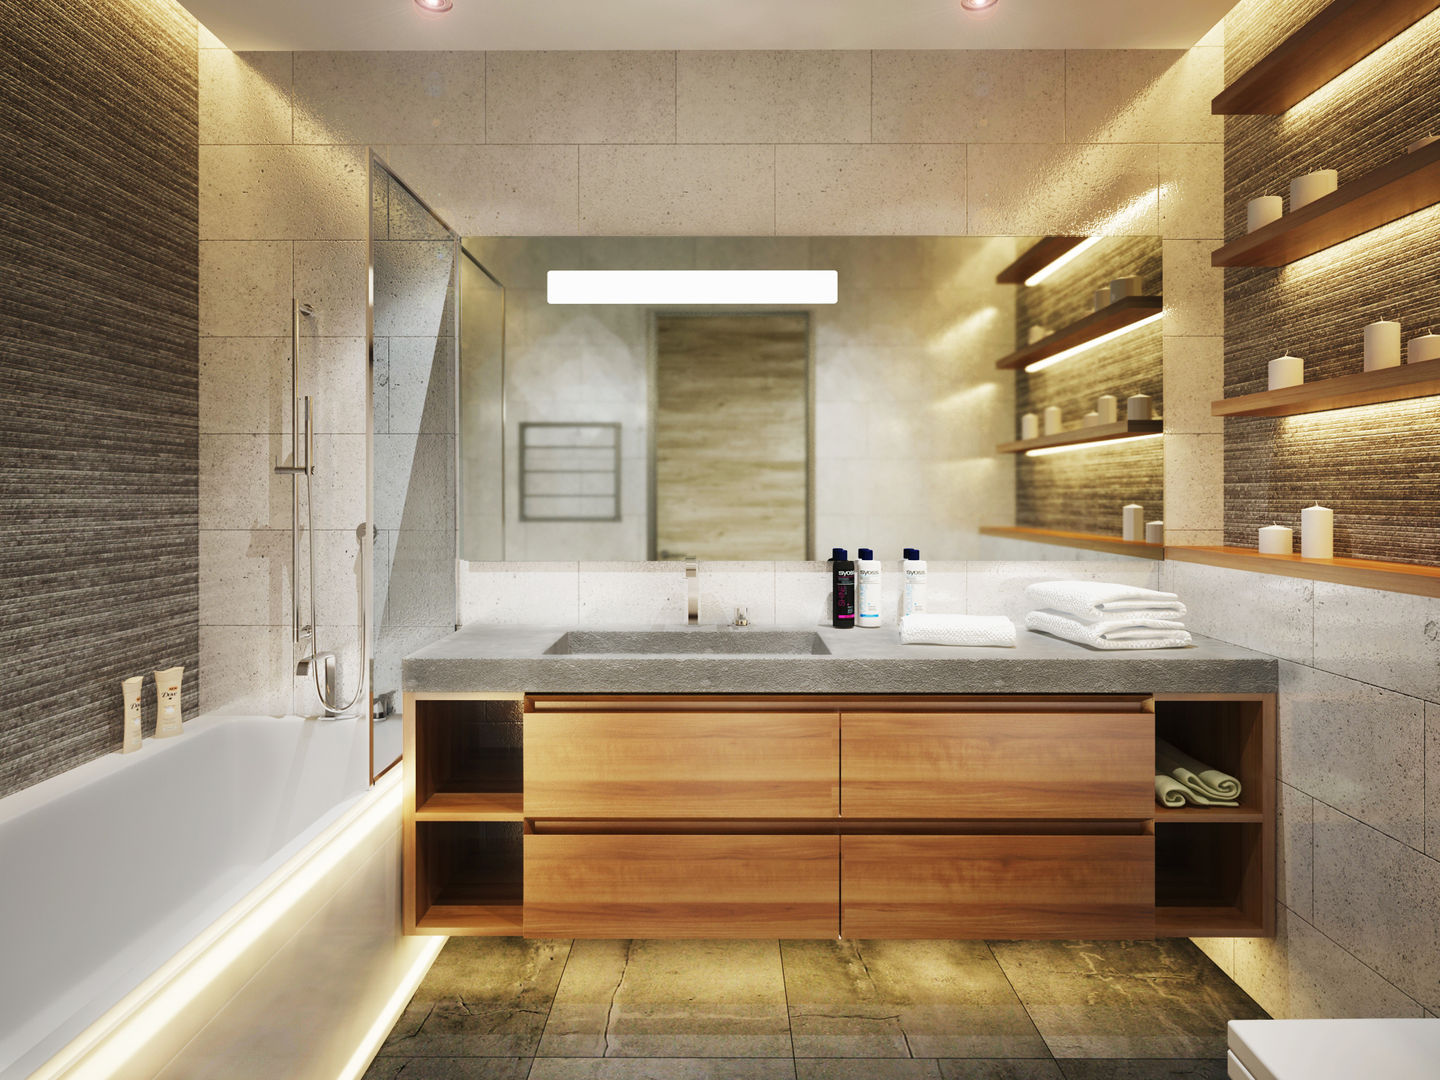 Квартира в современном минимализме, Polovets design studio Polovets design studio Ванная комната в стиле минимализм